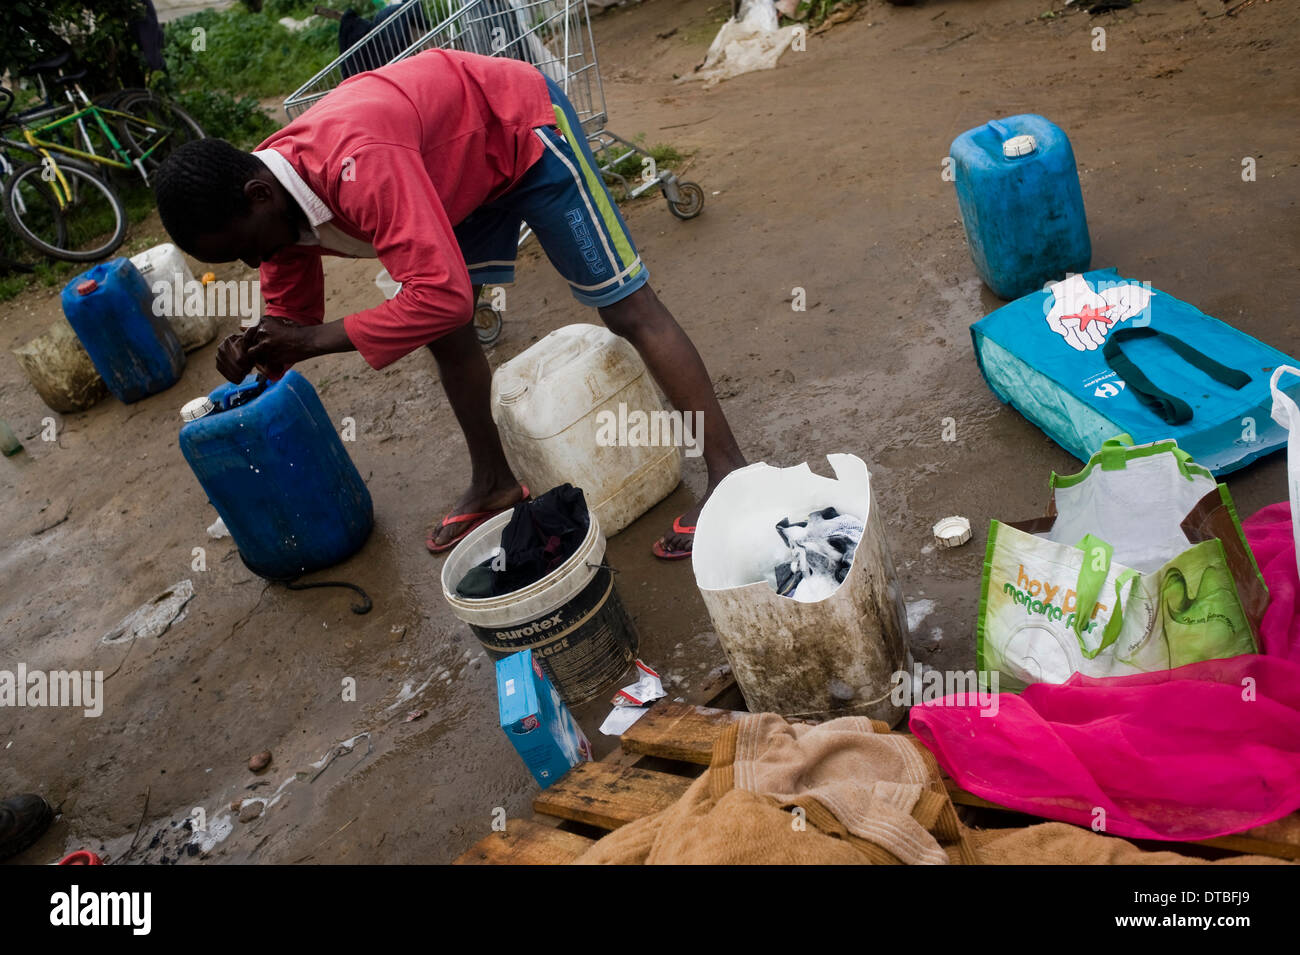 Les immigrants africains vivent dans des huttes en plastique dans un bidonville camping sur Lepe, Huelva, Espagne, en attente pour l'emploi dans les plantations fruitières. Banque D'Images